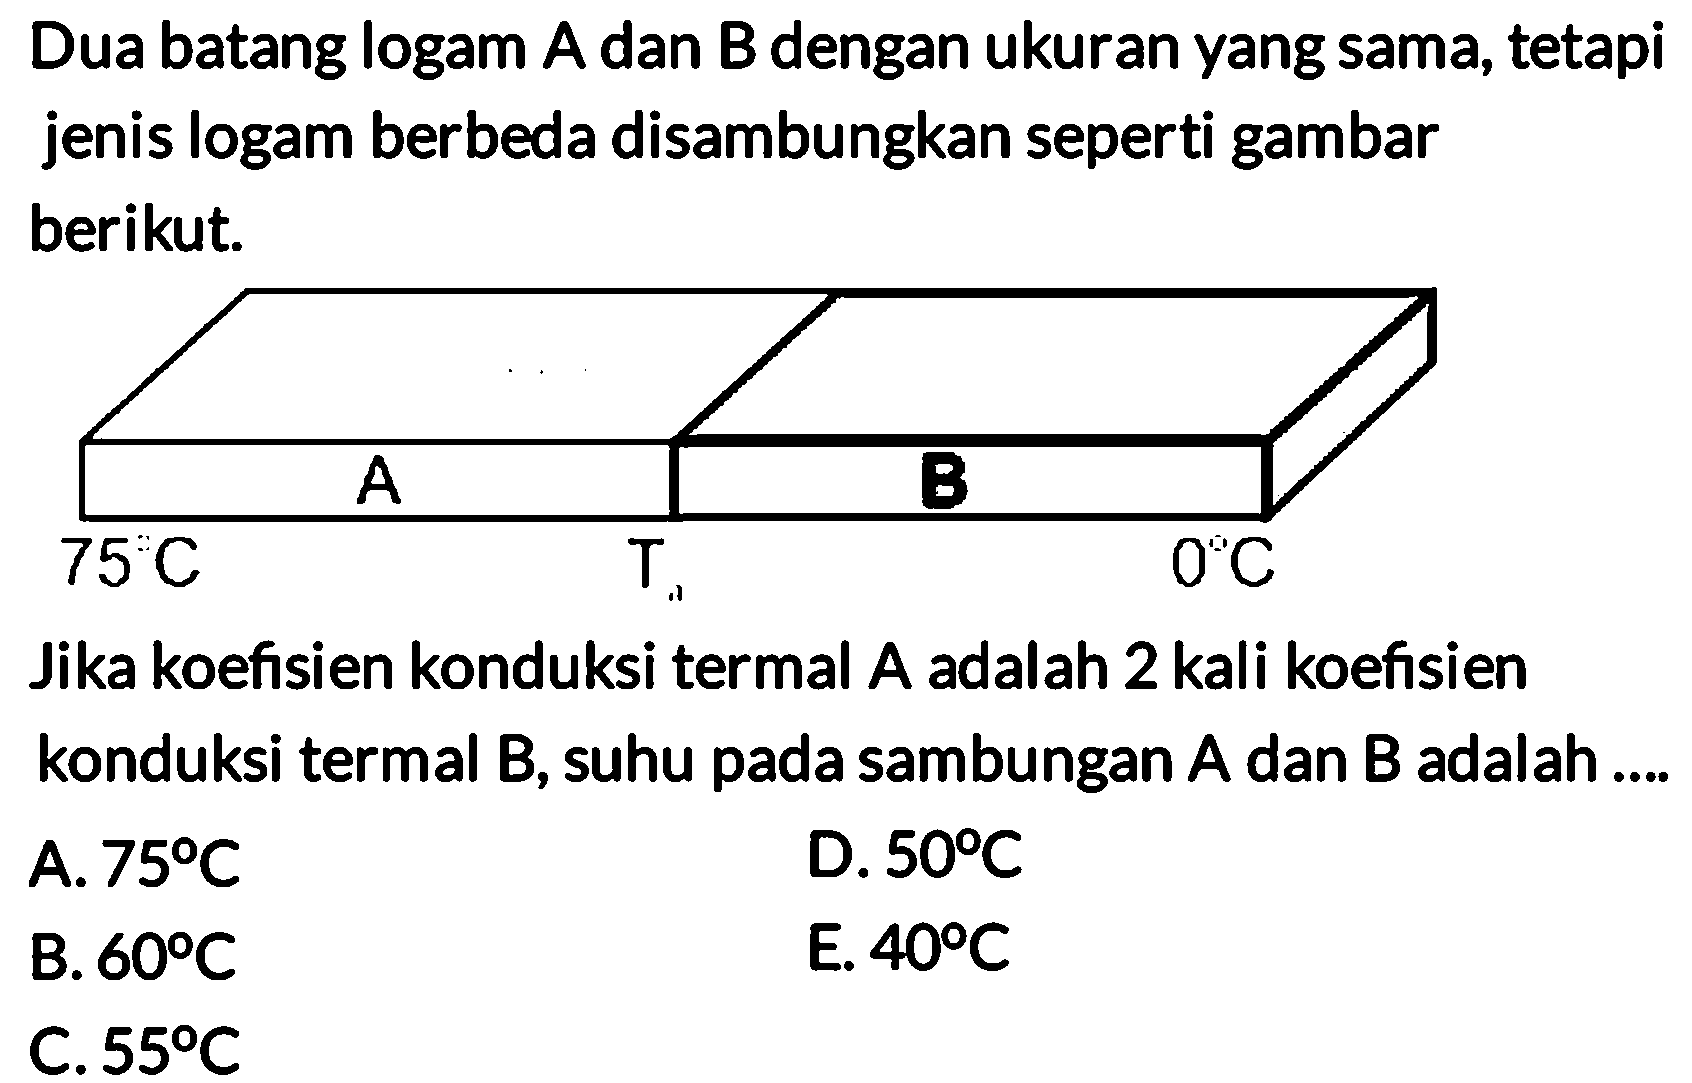 Dua batang logam A dan B dengan ukuran yang sama, tetapi jenis logam berbeda disambungkan seperti gambar berikut. 
A B 75 C T 0 C 
Jika koefisien konduksi termal A adalah 2 kali koefisien konduksi termal B, suhu pada sambungan A dan B adalah 
A. 75 C 
D. 50 C 
B. 60 C 
E. 40 C 
C. 55 C